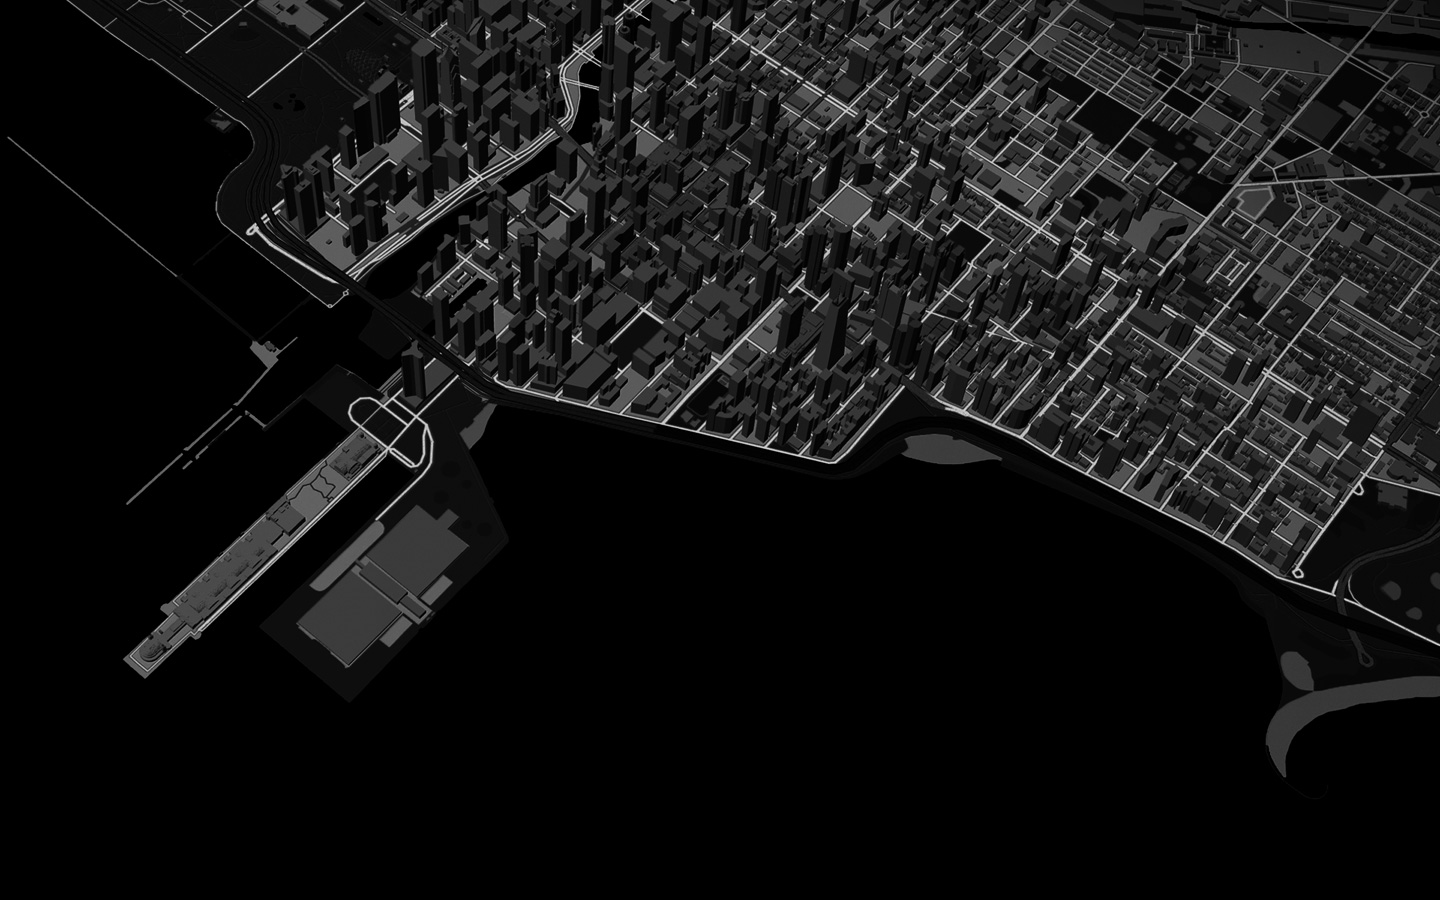 Animação de uma linha a representar um percurso de corrida num mapa em 3D de uma cidade.